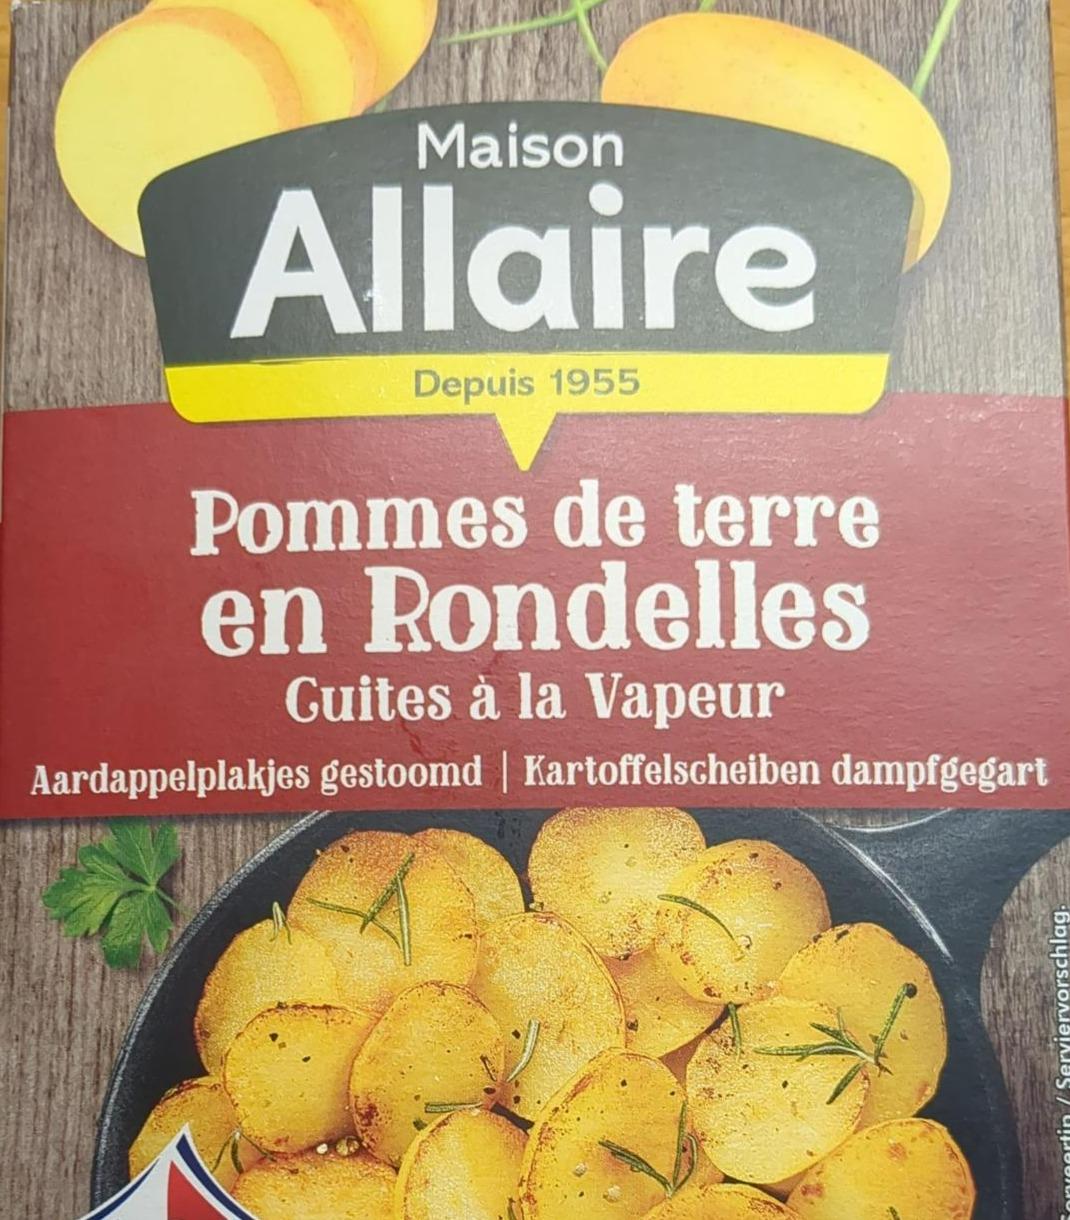 Fotografie - Pommes de terre en Rondelles Maison Allaire